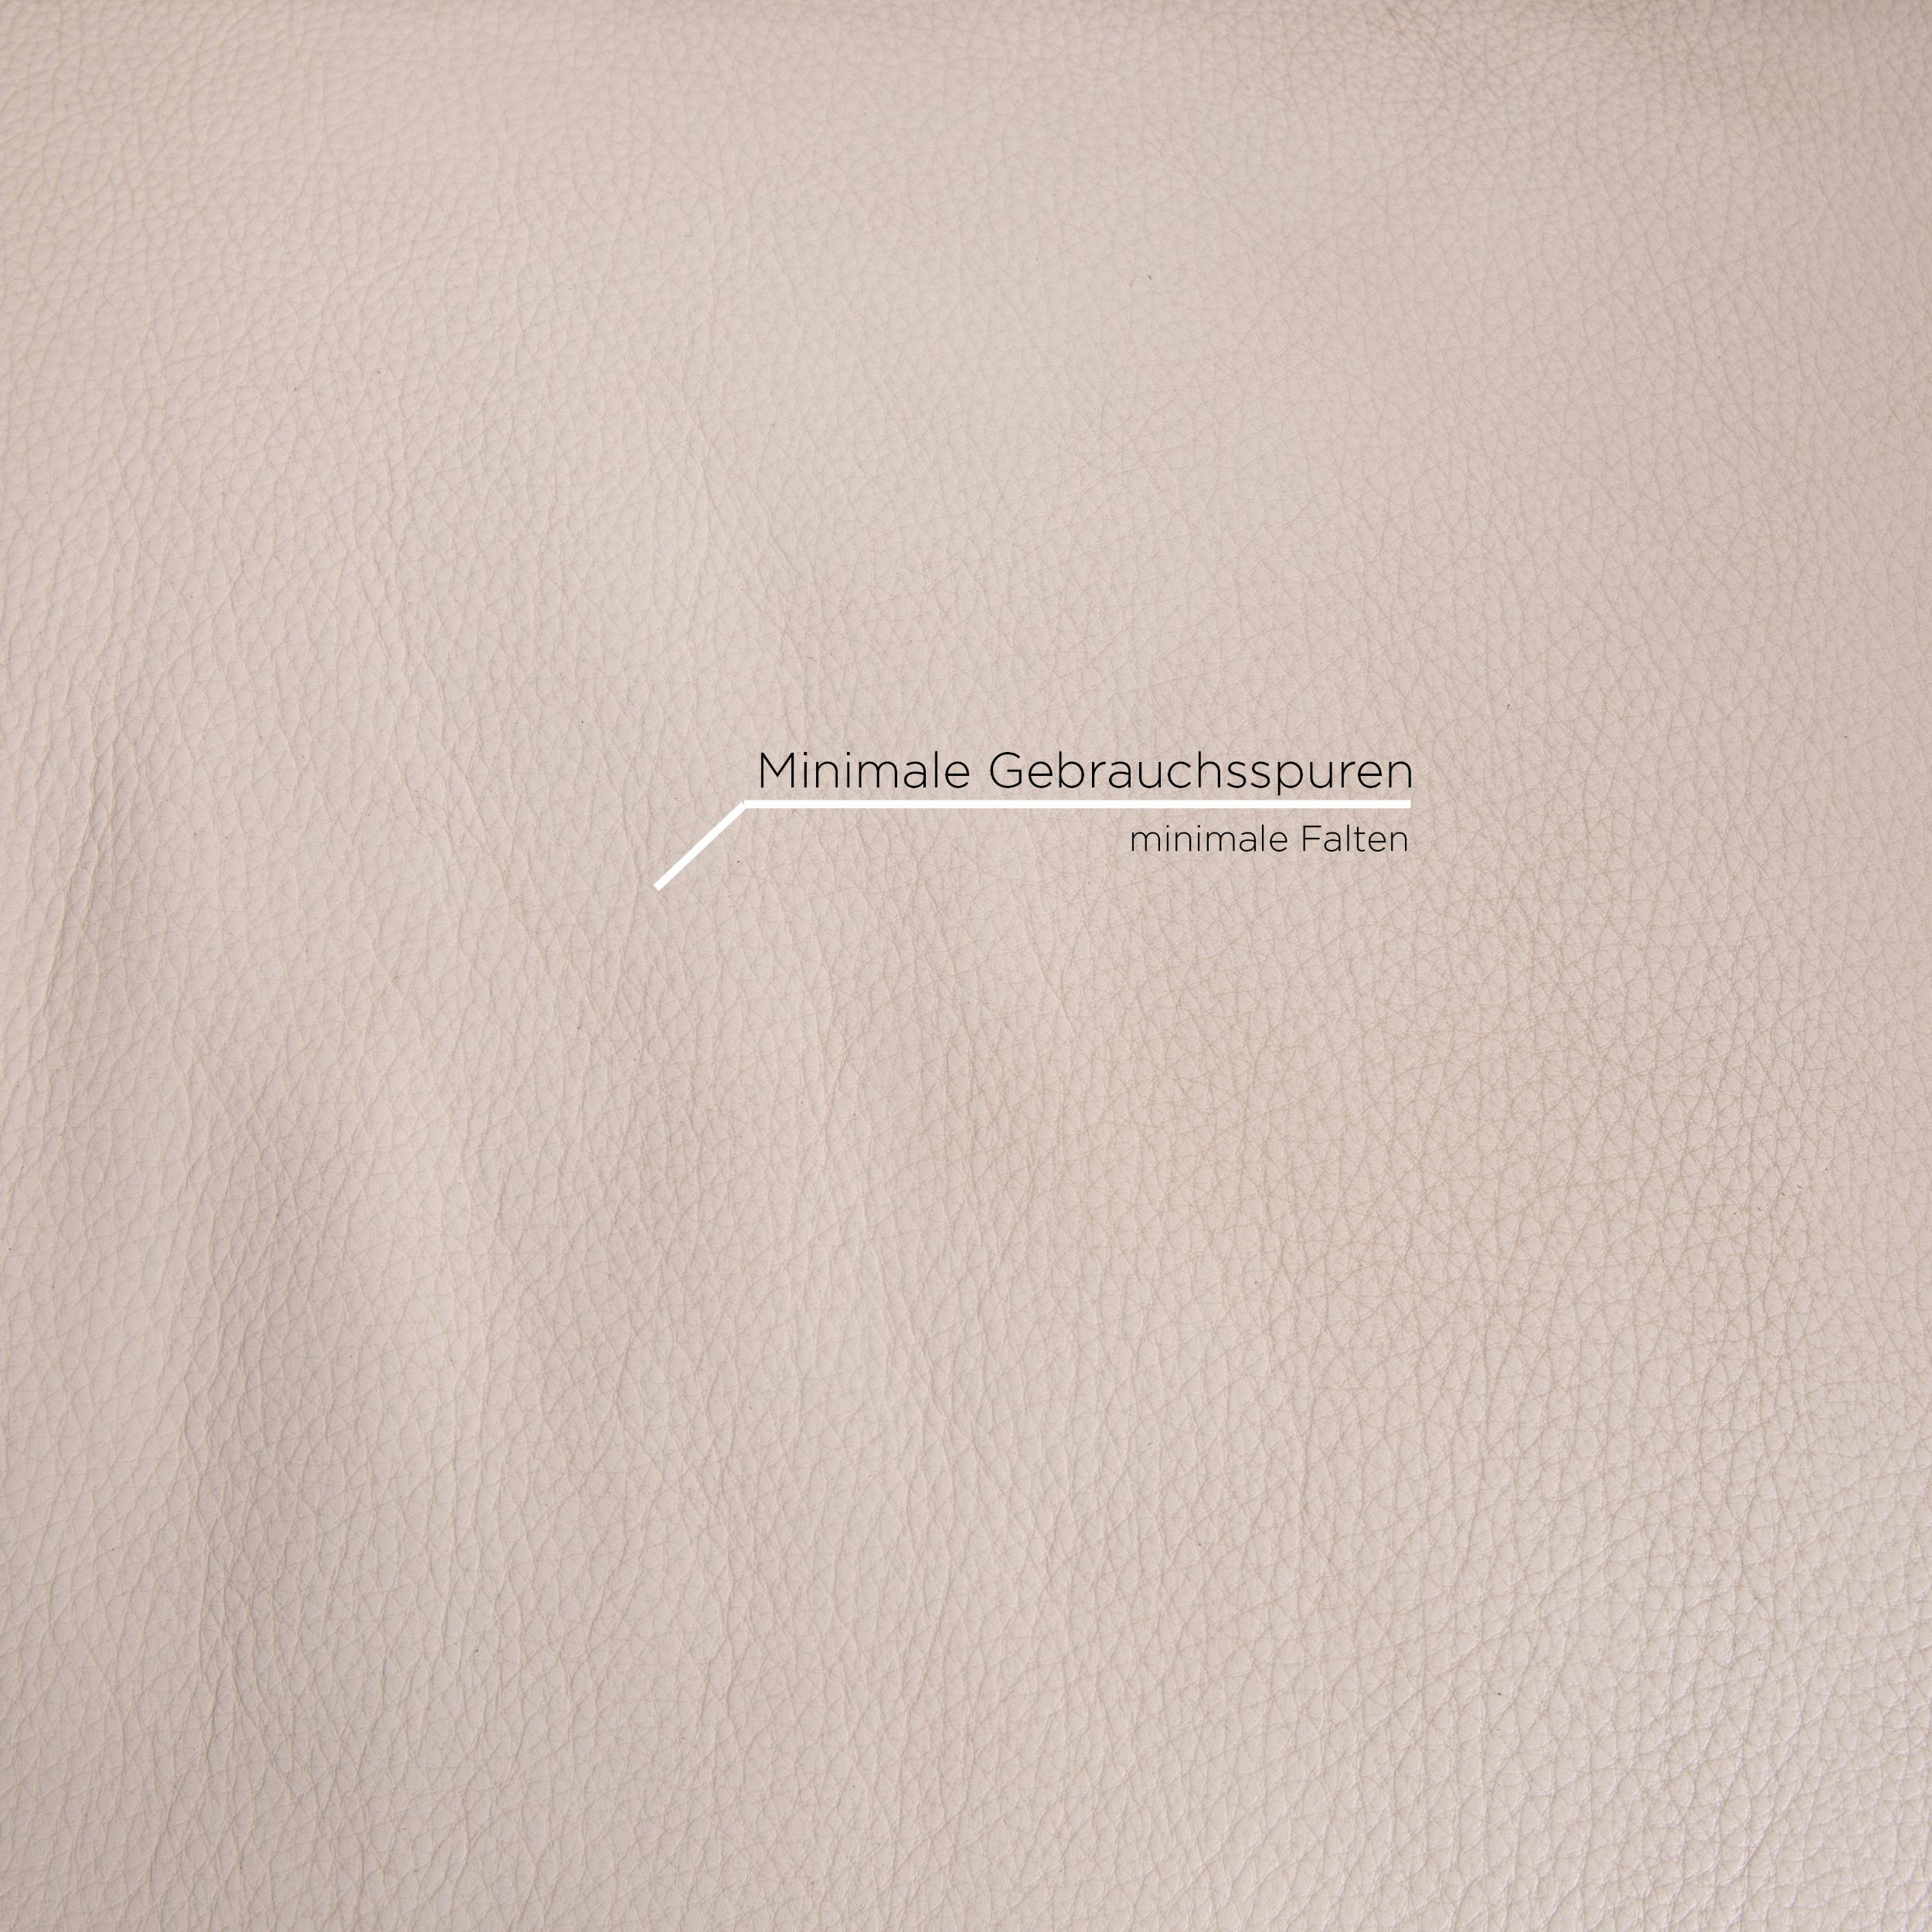 natuzzi cream leather sofa